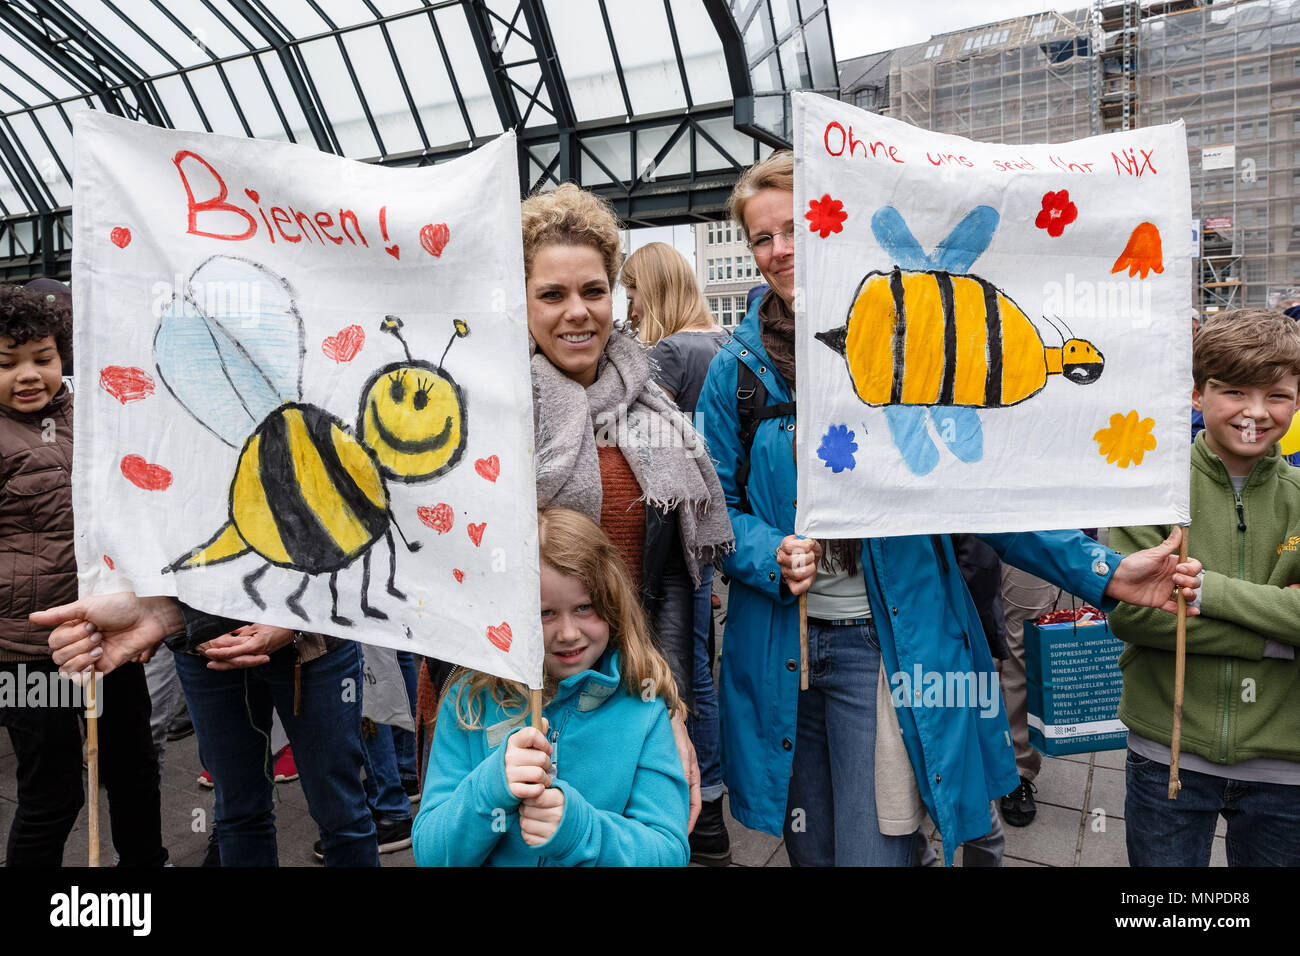 19 maggio 2018, Germania Amburgo: due madri e i loro bambini portano i loro striscioni con api sulla campagna mondiale giornata contro il settore agricolo coroporation Monsanto. Essi dimostrano contro l'impiego di sementi geneticamente modificate e, secondo la loro opinione, pesticidi che sono dannosi per l'ambiente. Foto: Markus Scholz/dpa Foto Stock